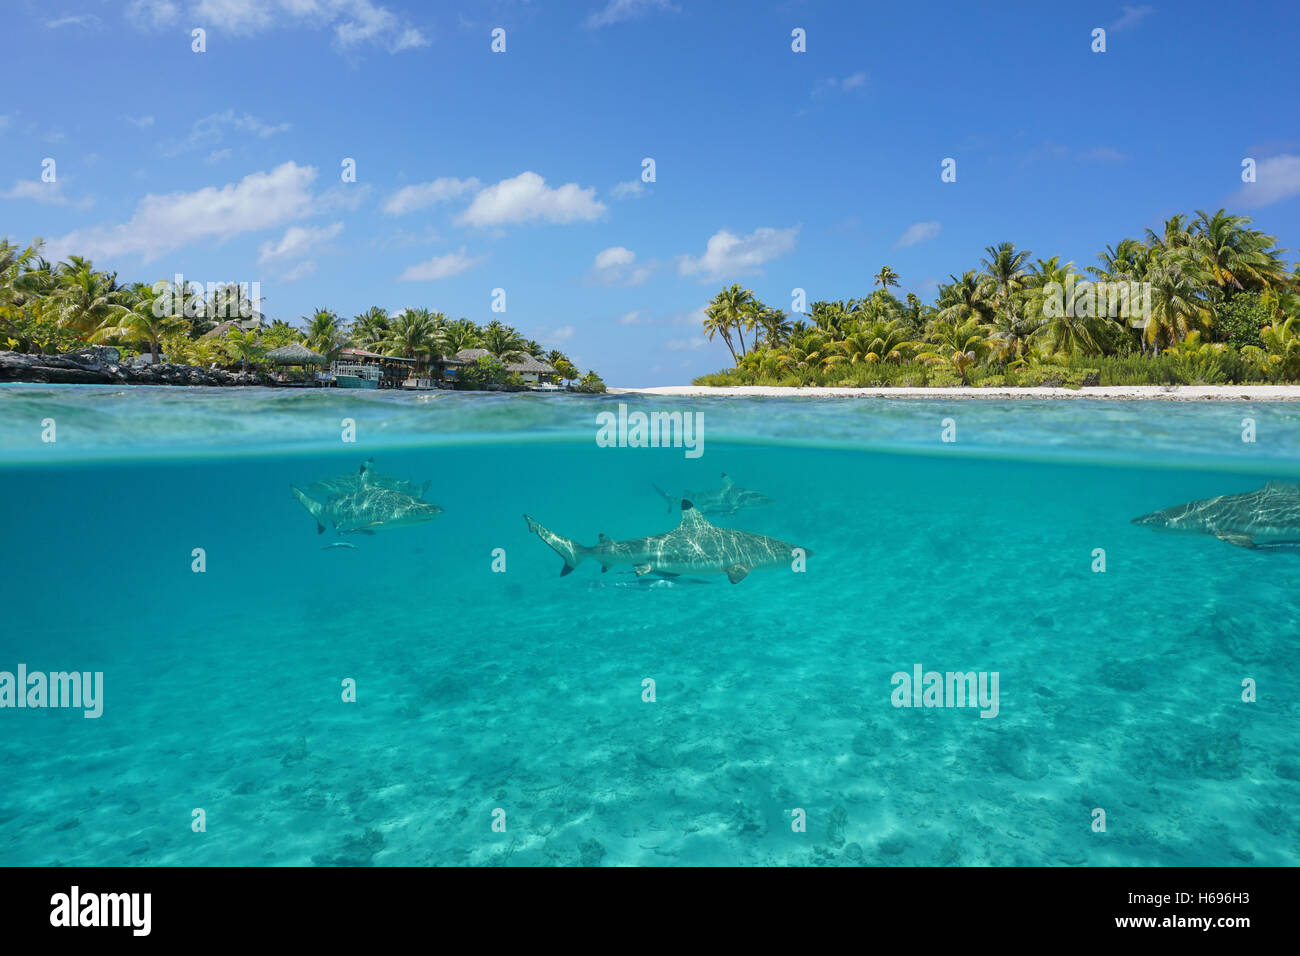 La moitié supérieure et la moitié inférieure vue d'une île tropicale, un resort et blacktip reef sharks underwater, Tikehau, Polynésie Française Banque D'Images